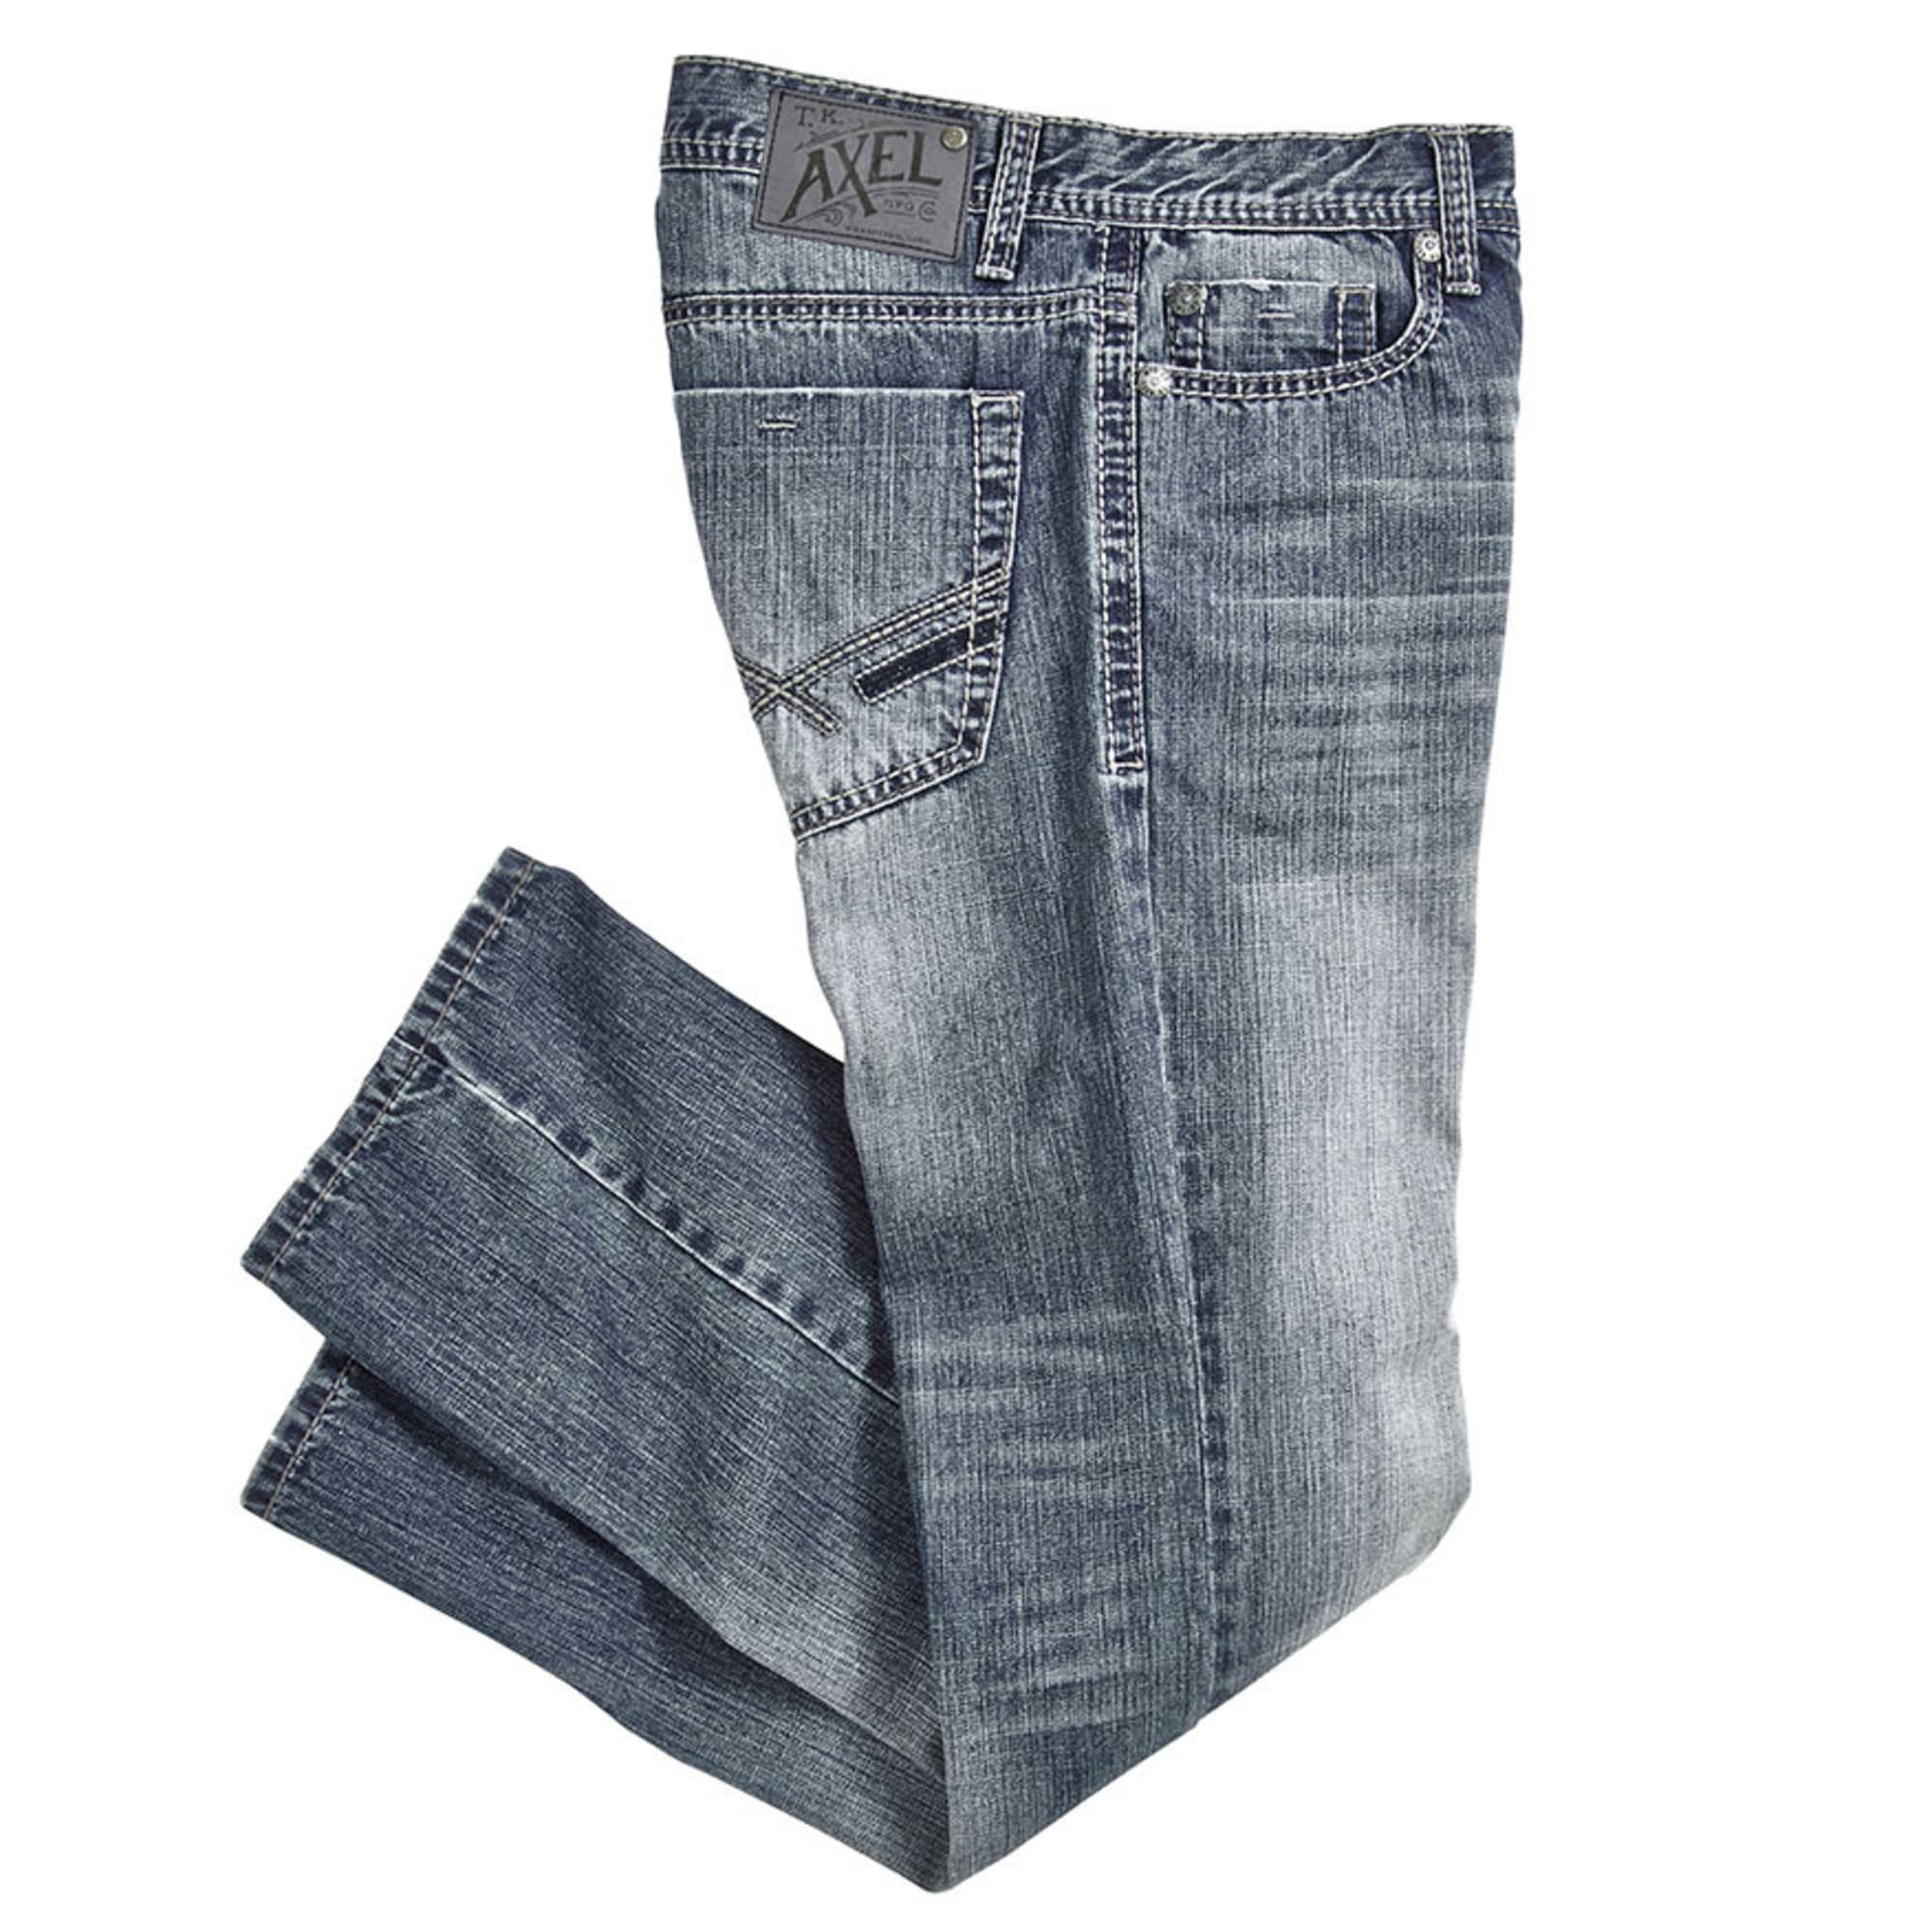 tk axel jeans website